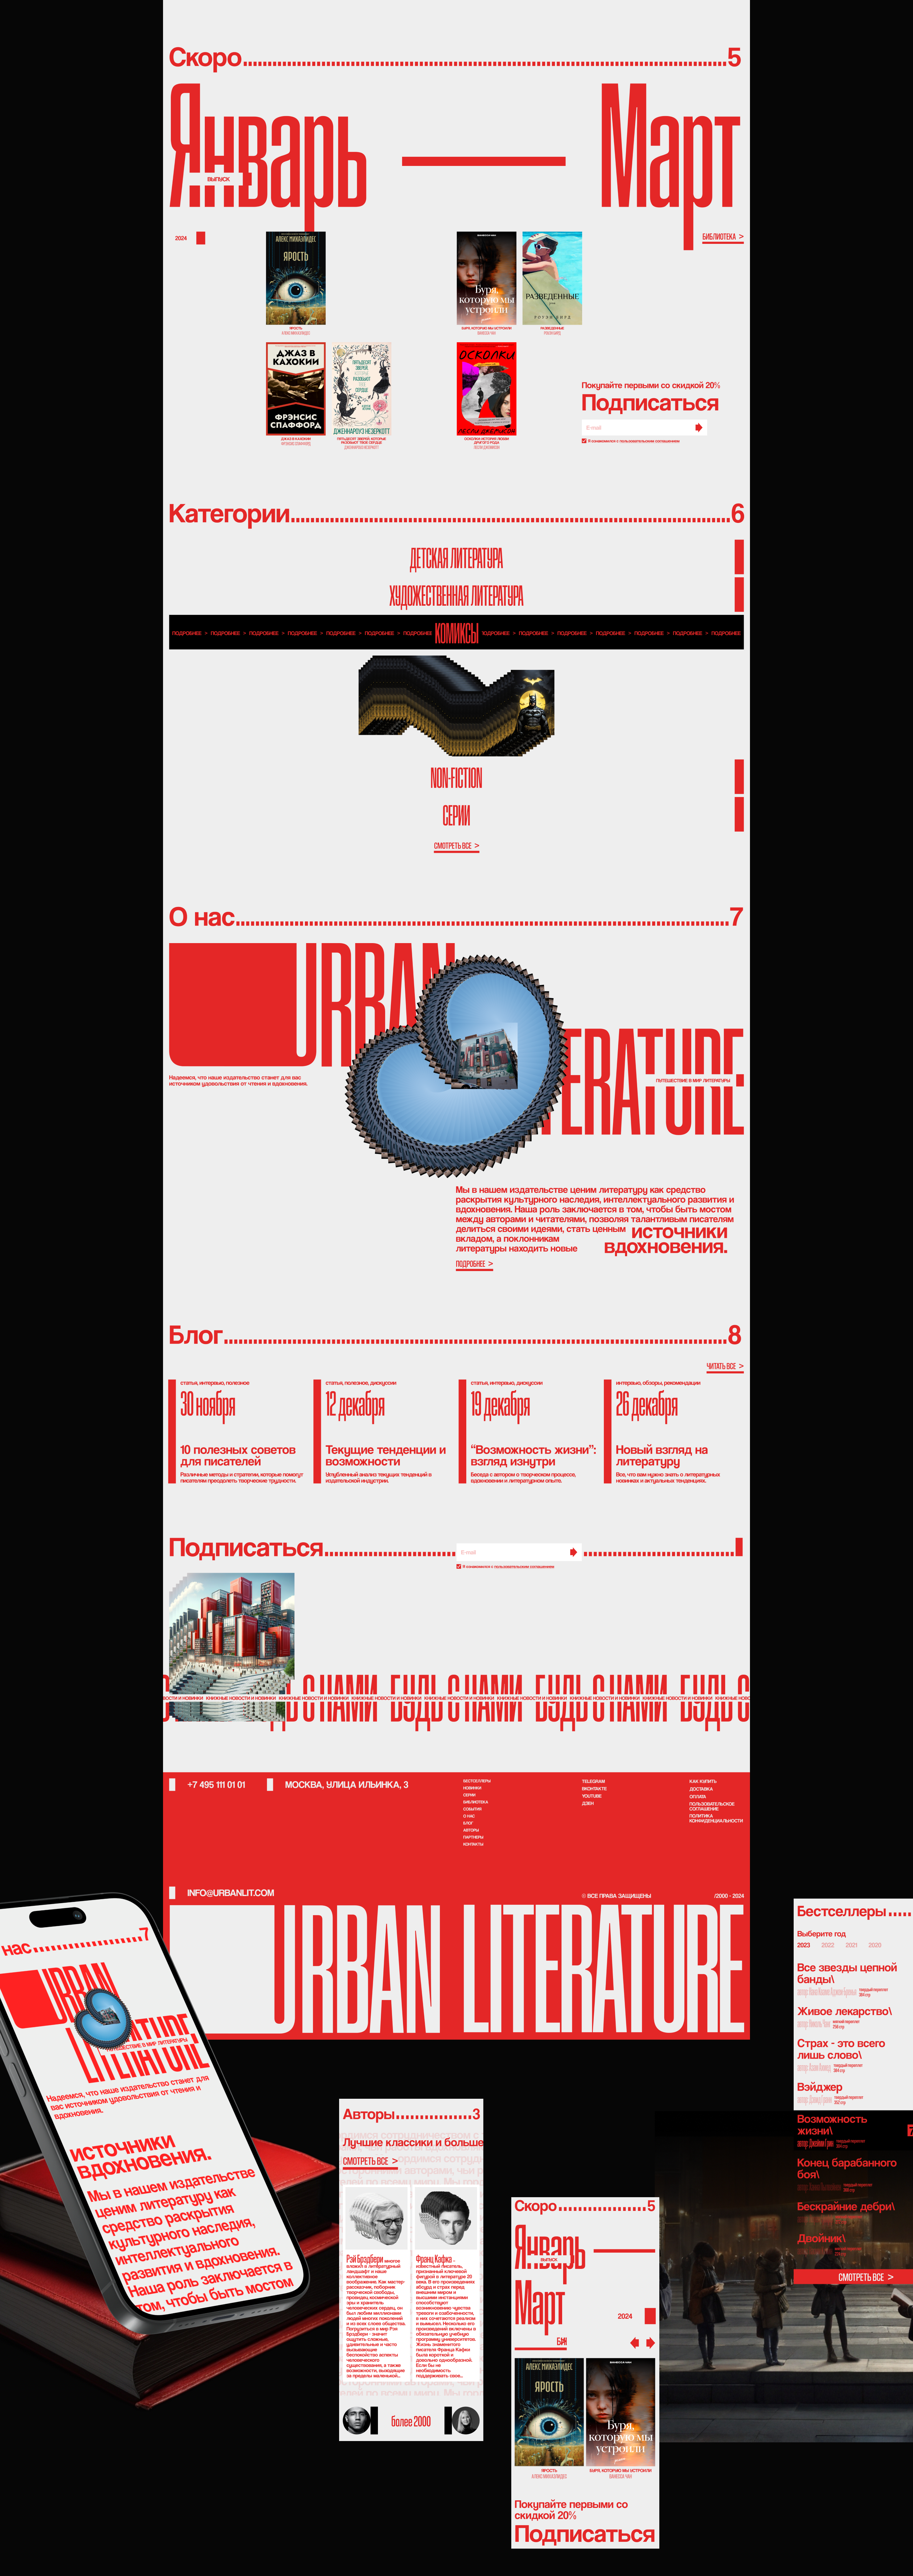 Urban Literature — Изображение №3 — Интерфейсы, Брендинг на Dprofile